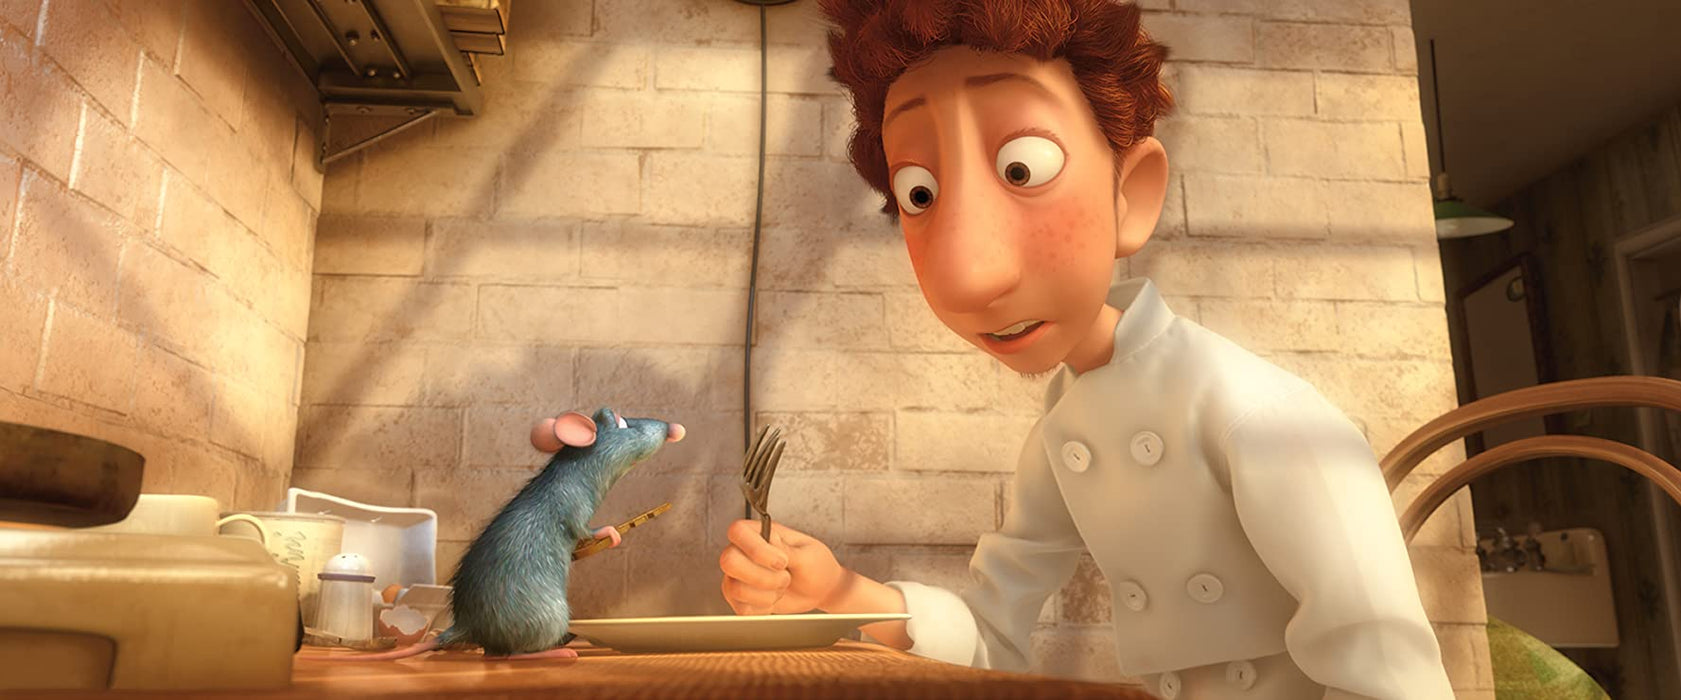 Disney Pixar's Ratatouille [Blu-ray + DVD + Digital]